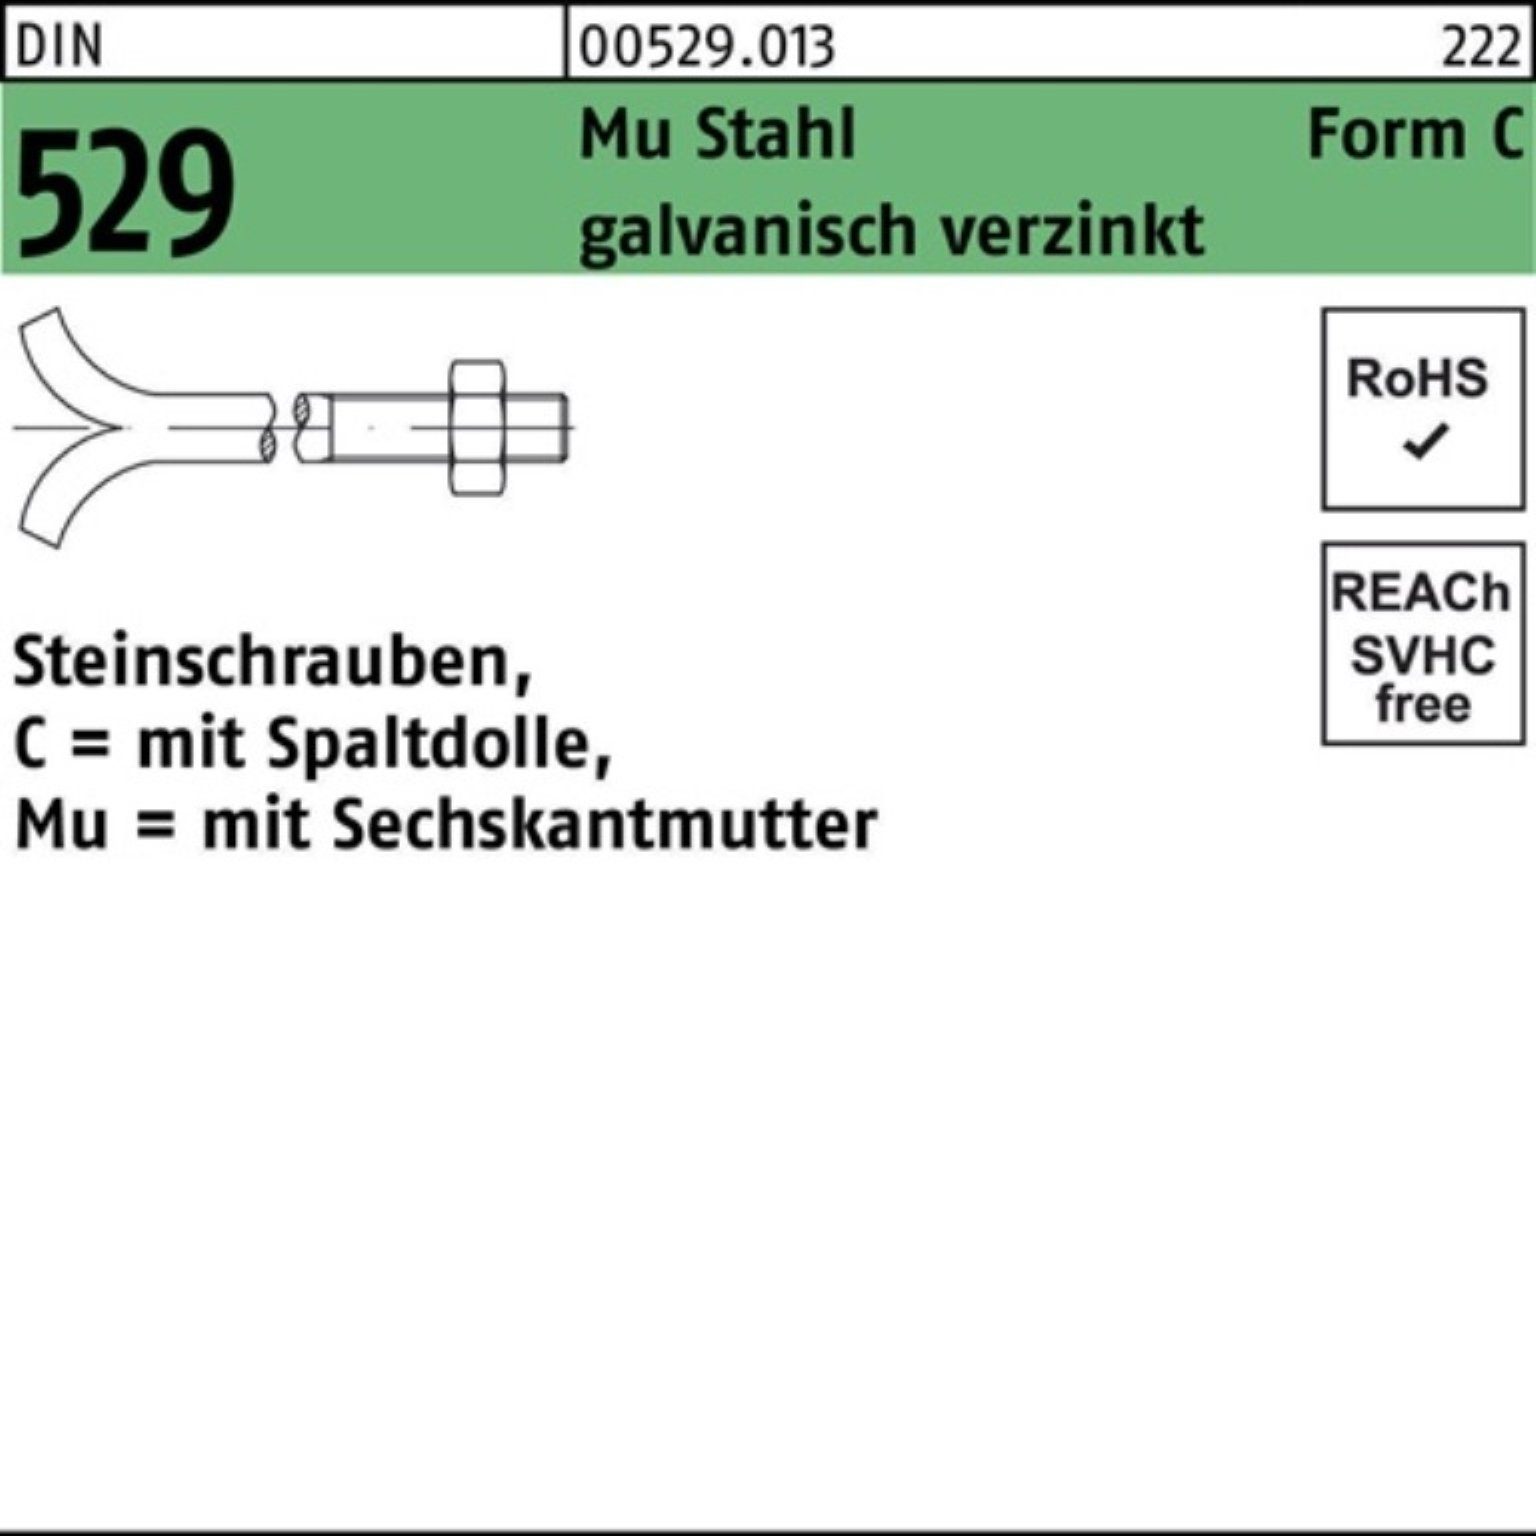 529 3. Reyher 16x250 DIN Steinschraube Pack Schraube Spaltdolle/6-ktmutter Mu 100er CM